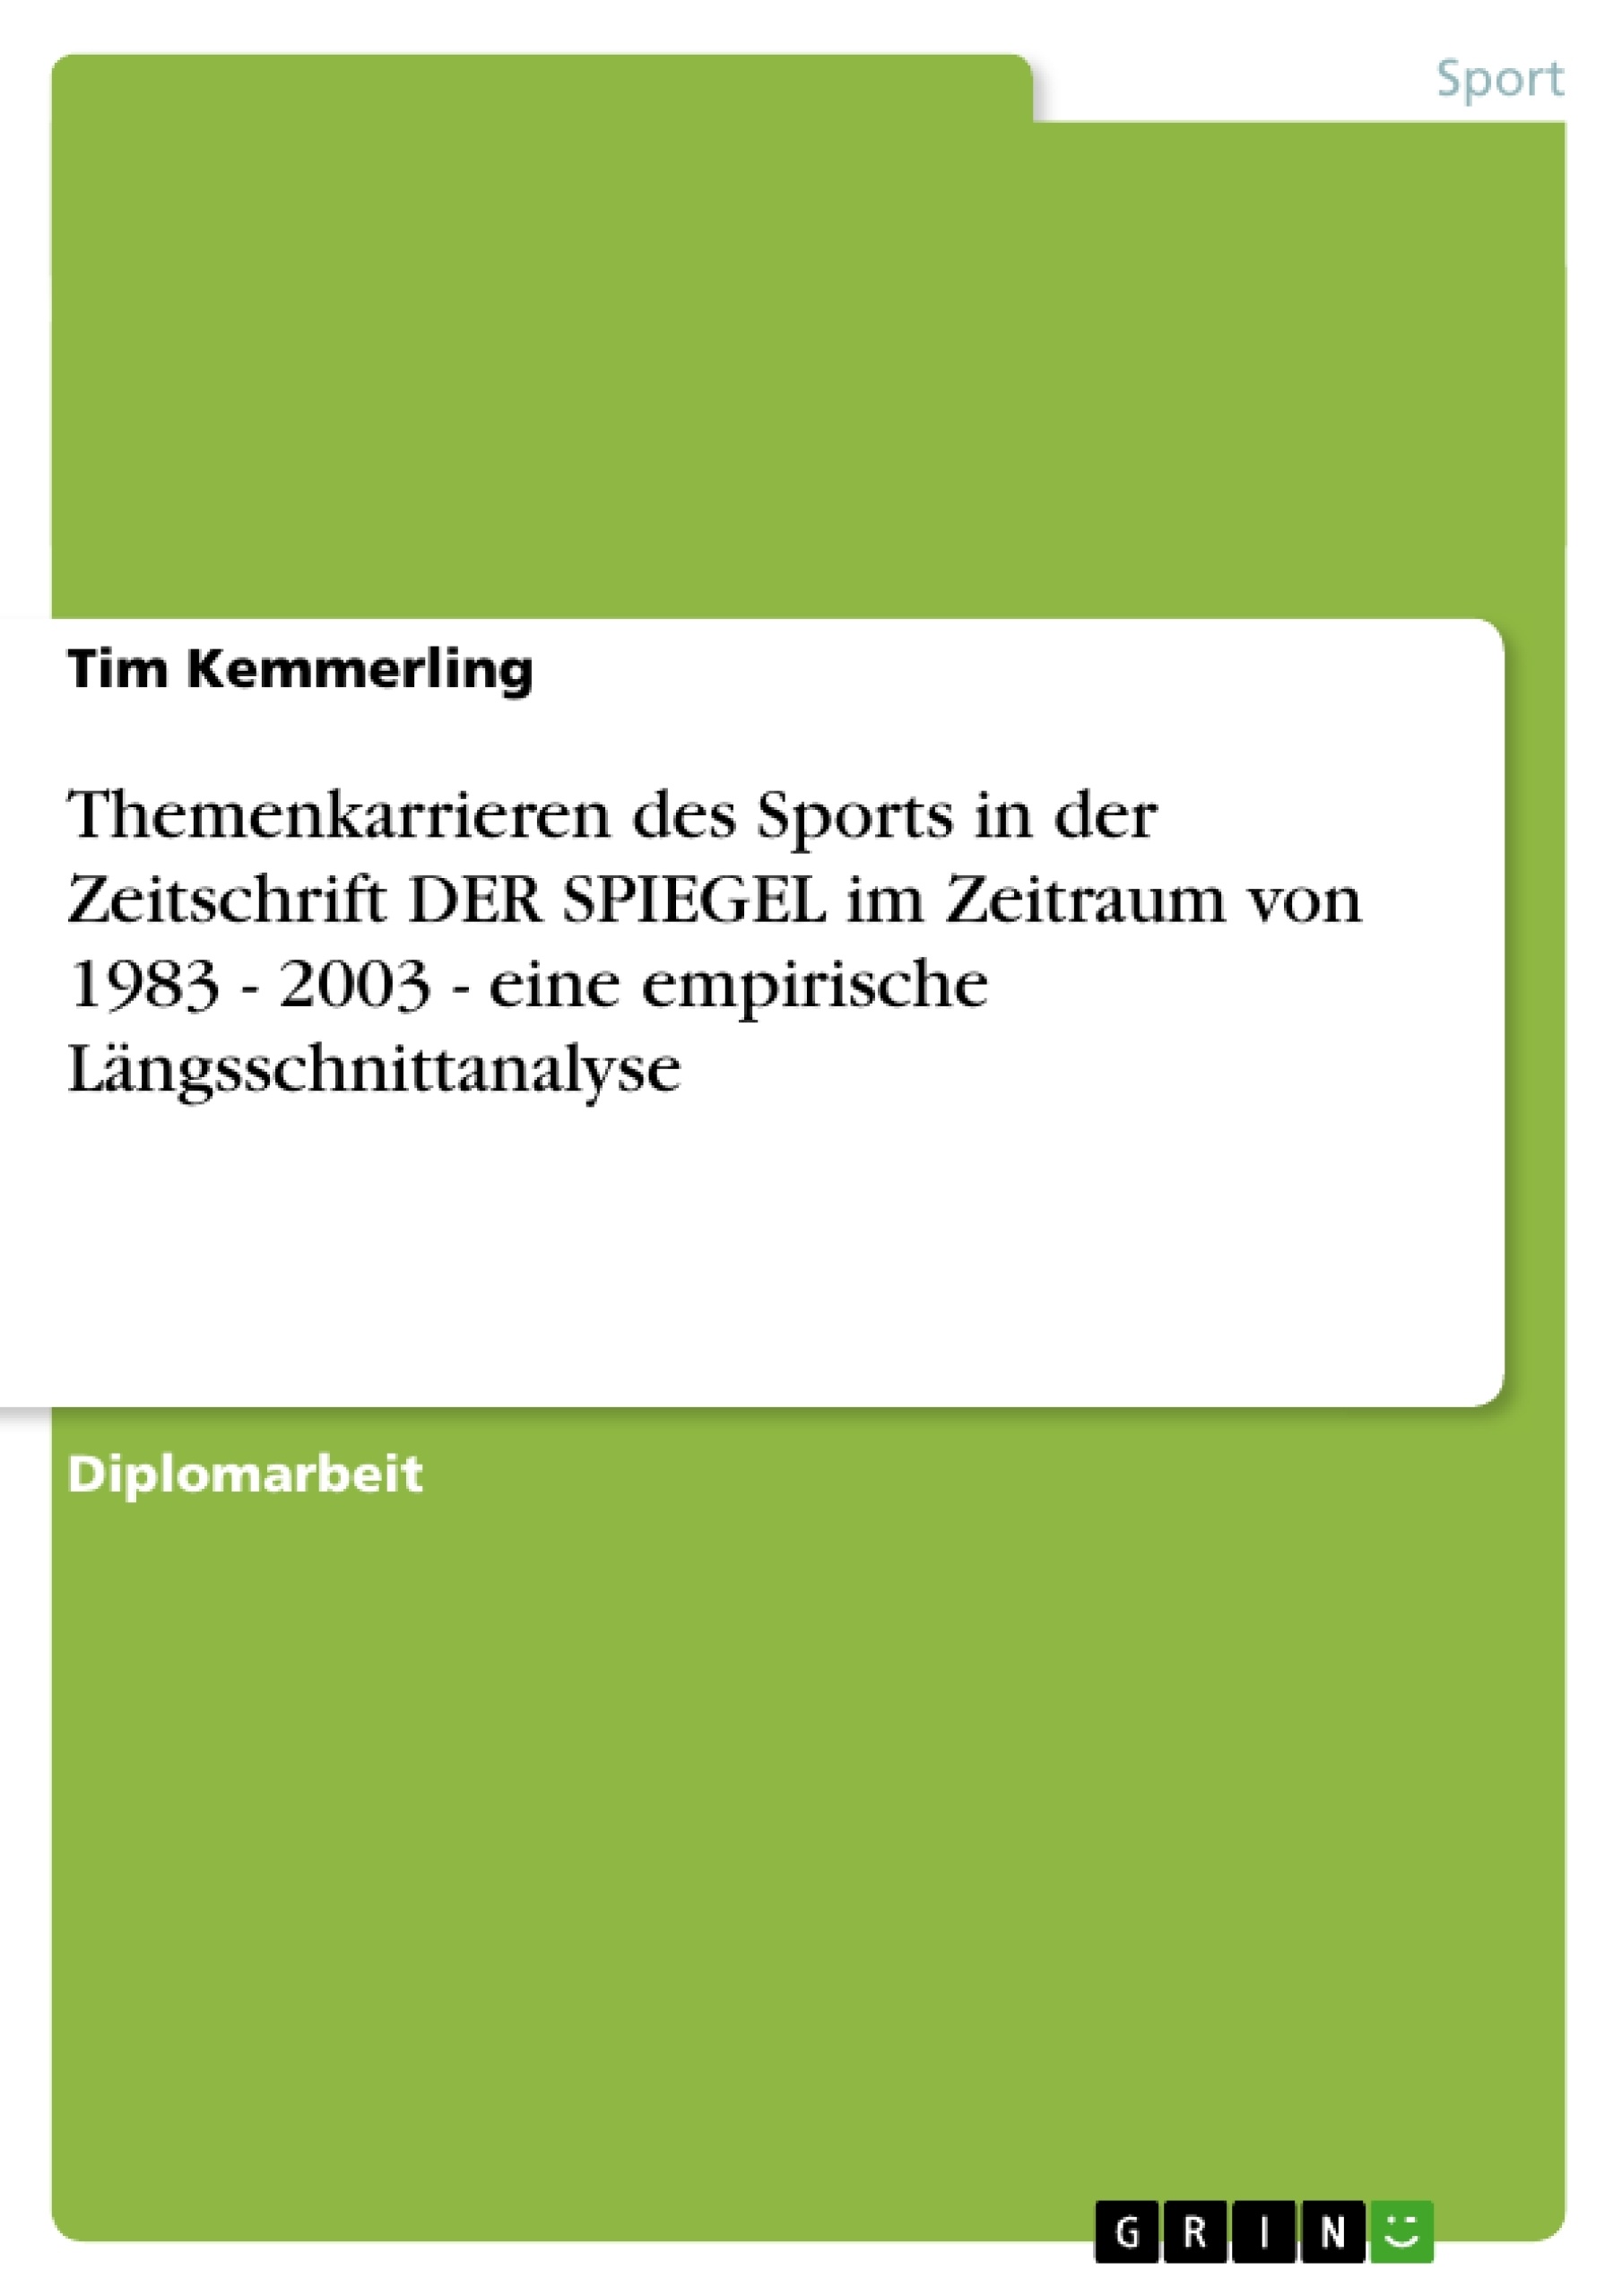 Title: Themenkarrieren des Sports in der Zeitschrift DER SPIEGEL im Zeitraum von 1983 - 2003 - eine empirische Längsschnittanalyse